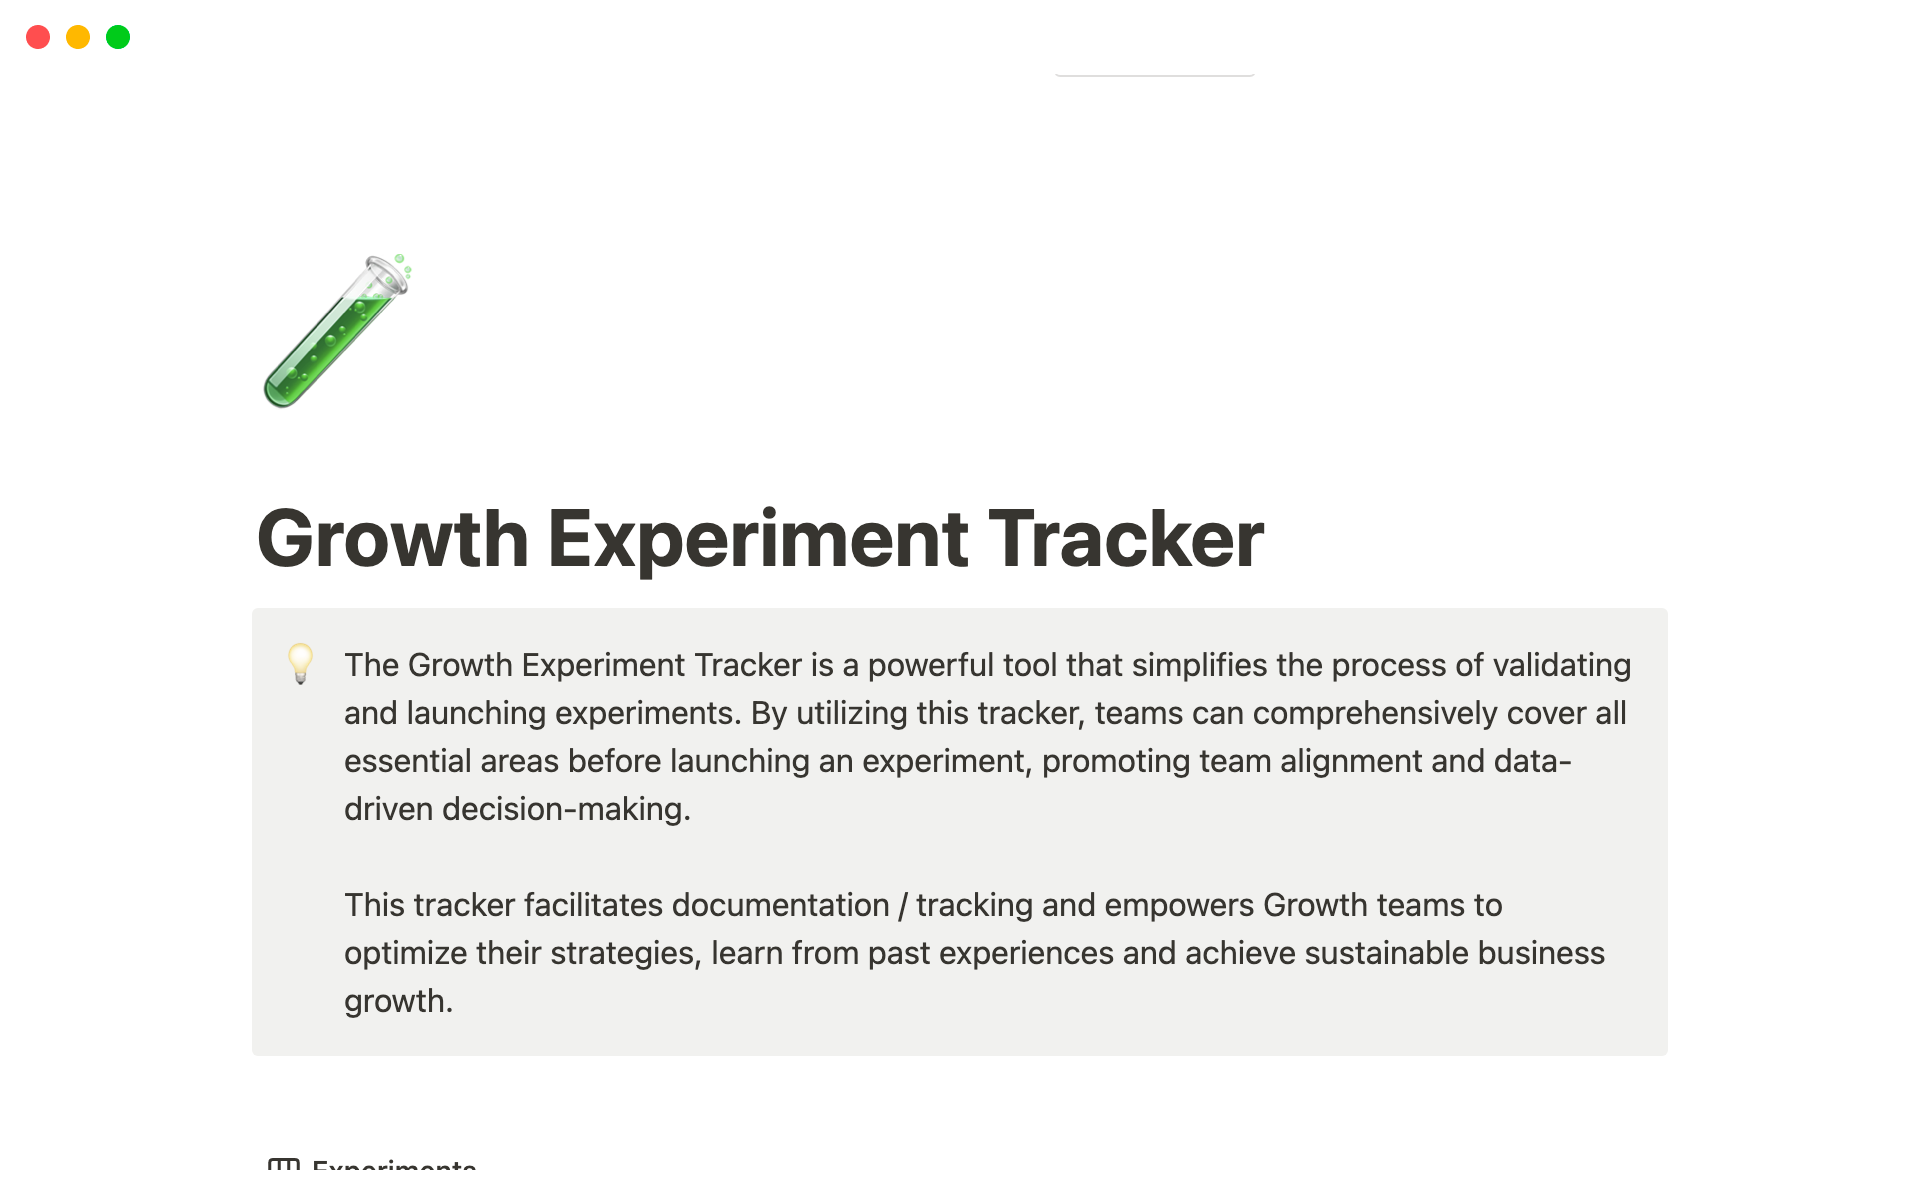 Uma prévia do modelo para Growth Experiment Tracker